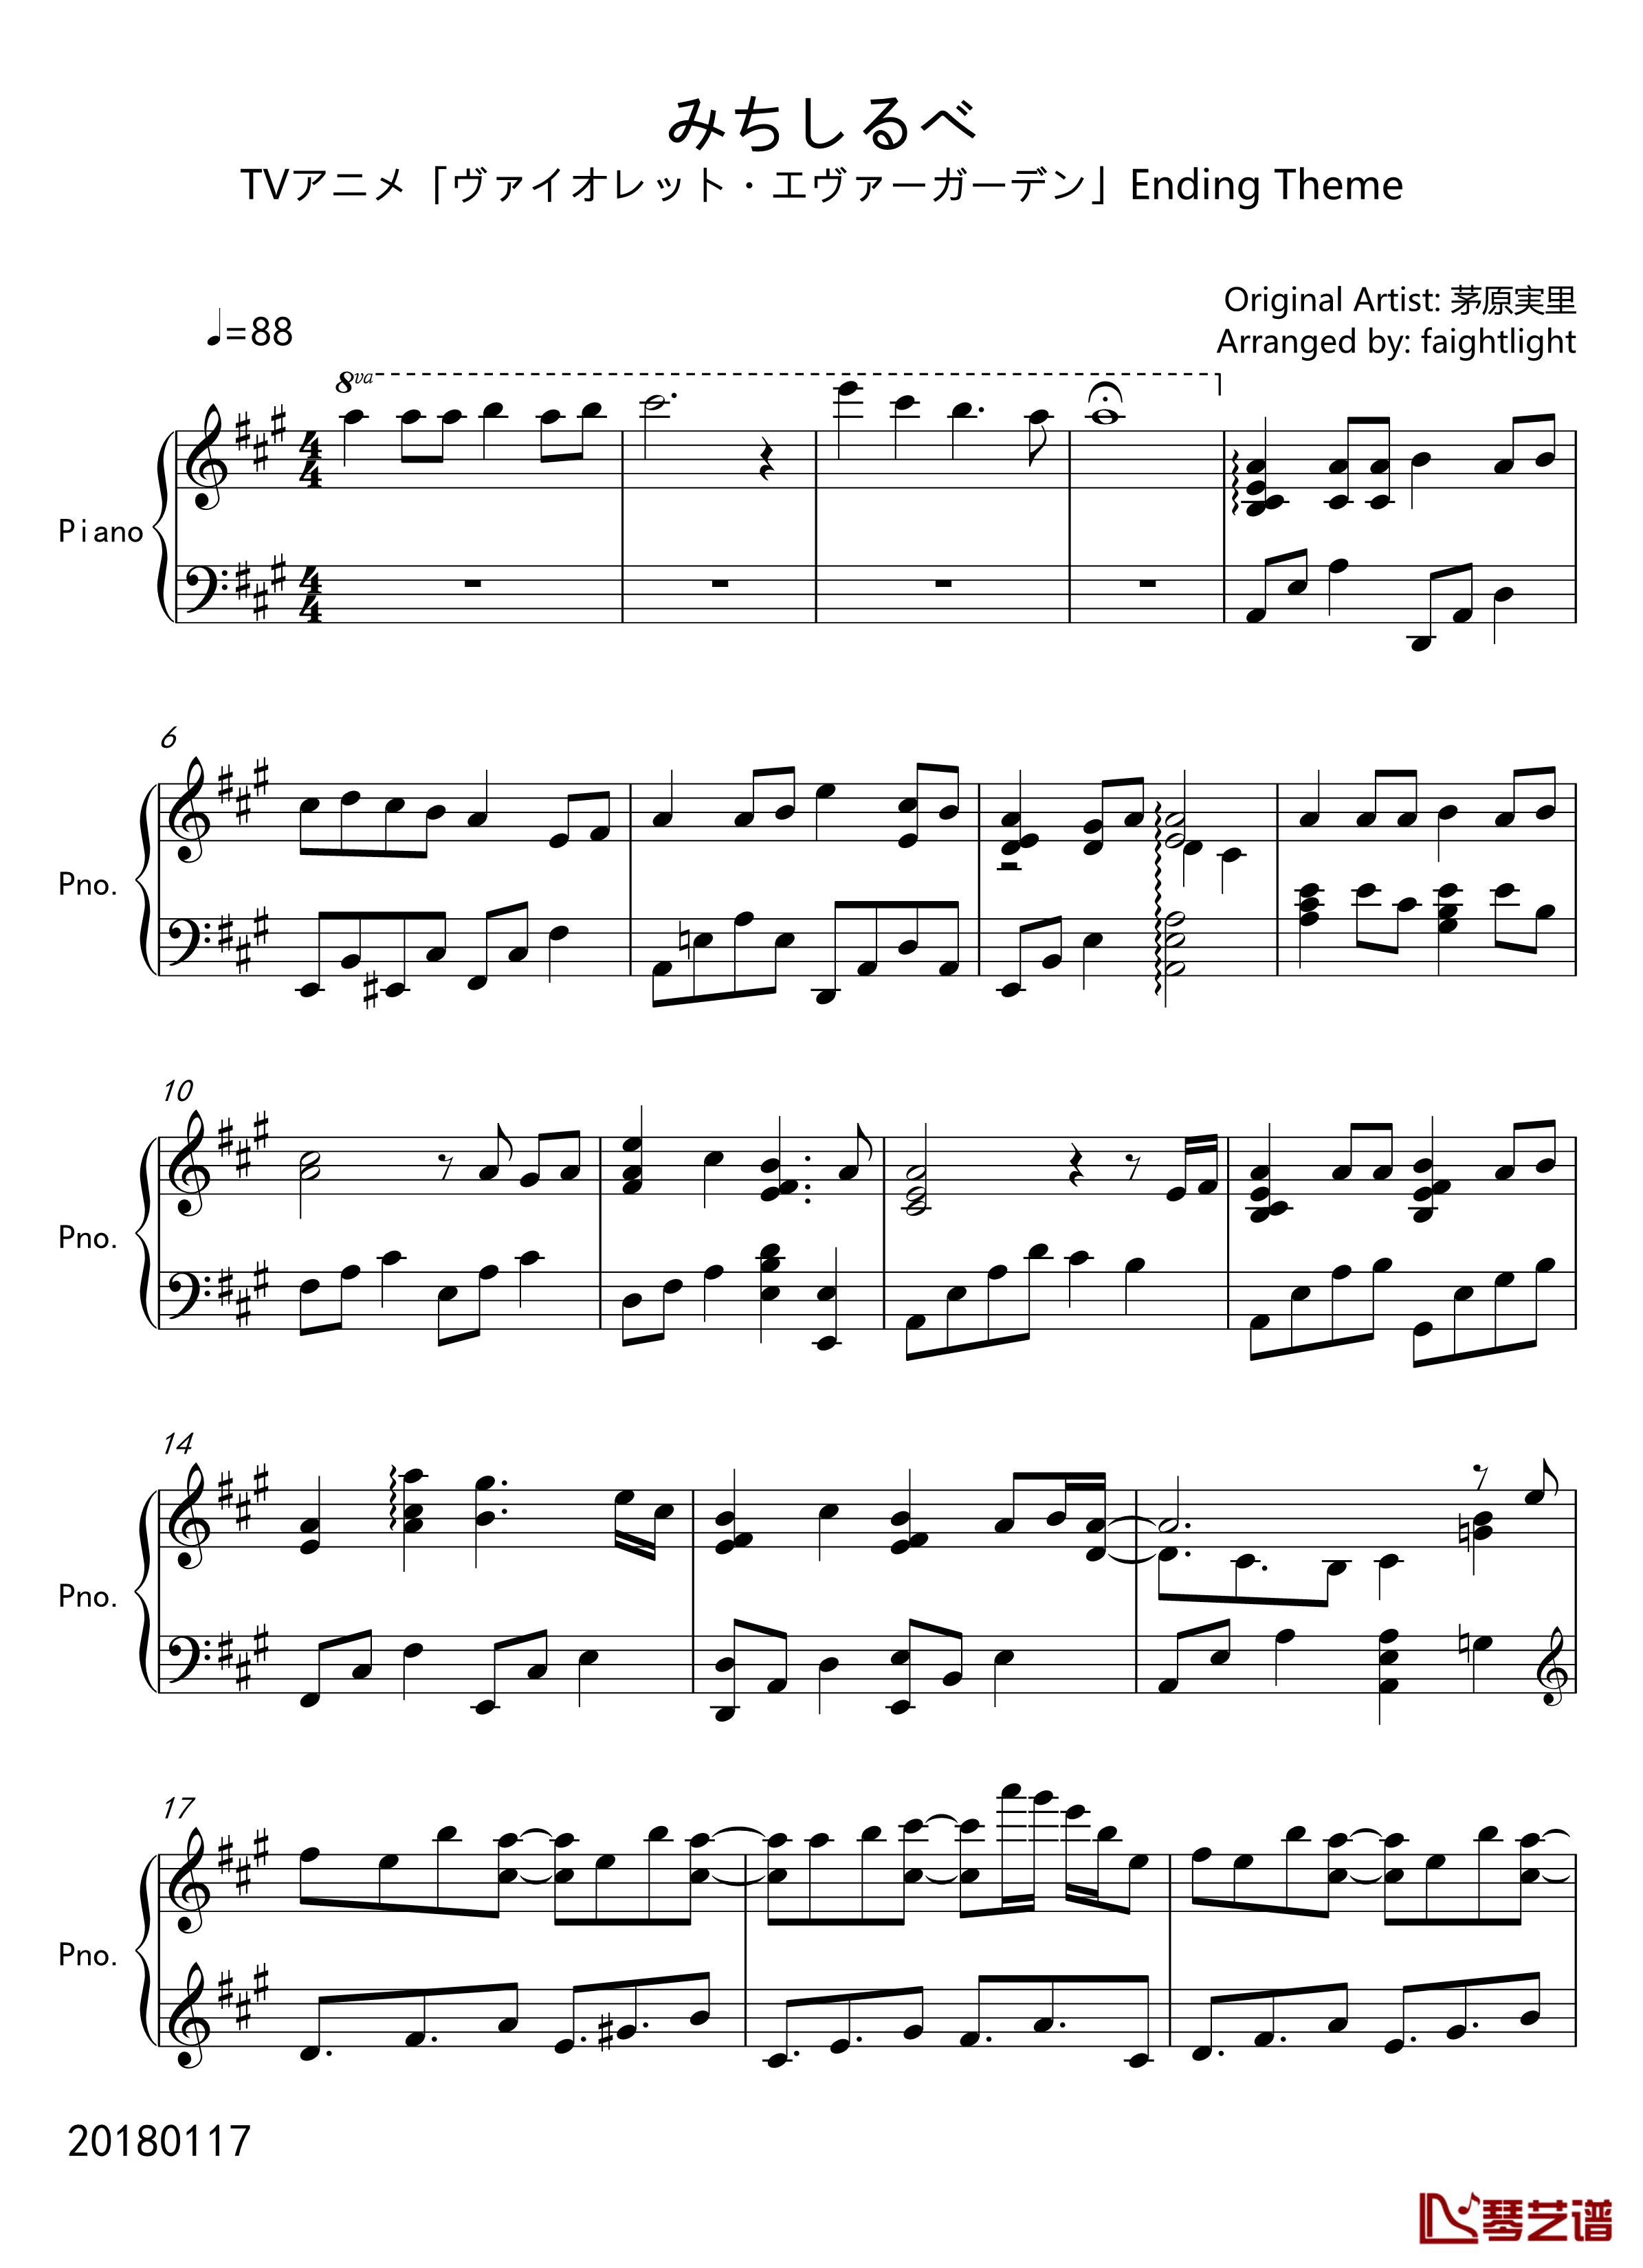  みちしるべ钢琴谱-紫罗兰永恒花园-ED1